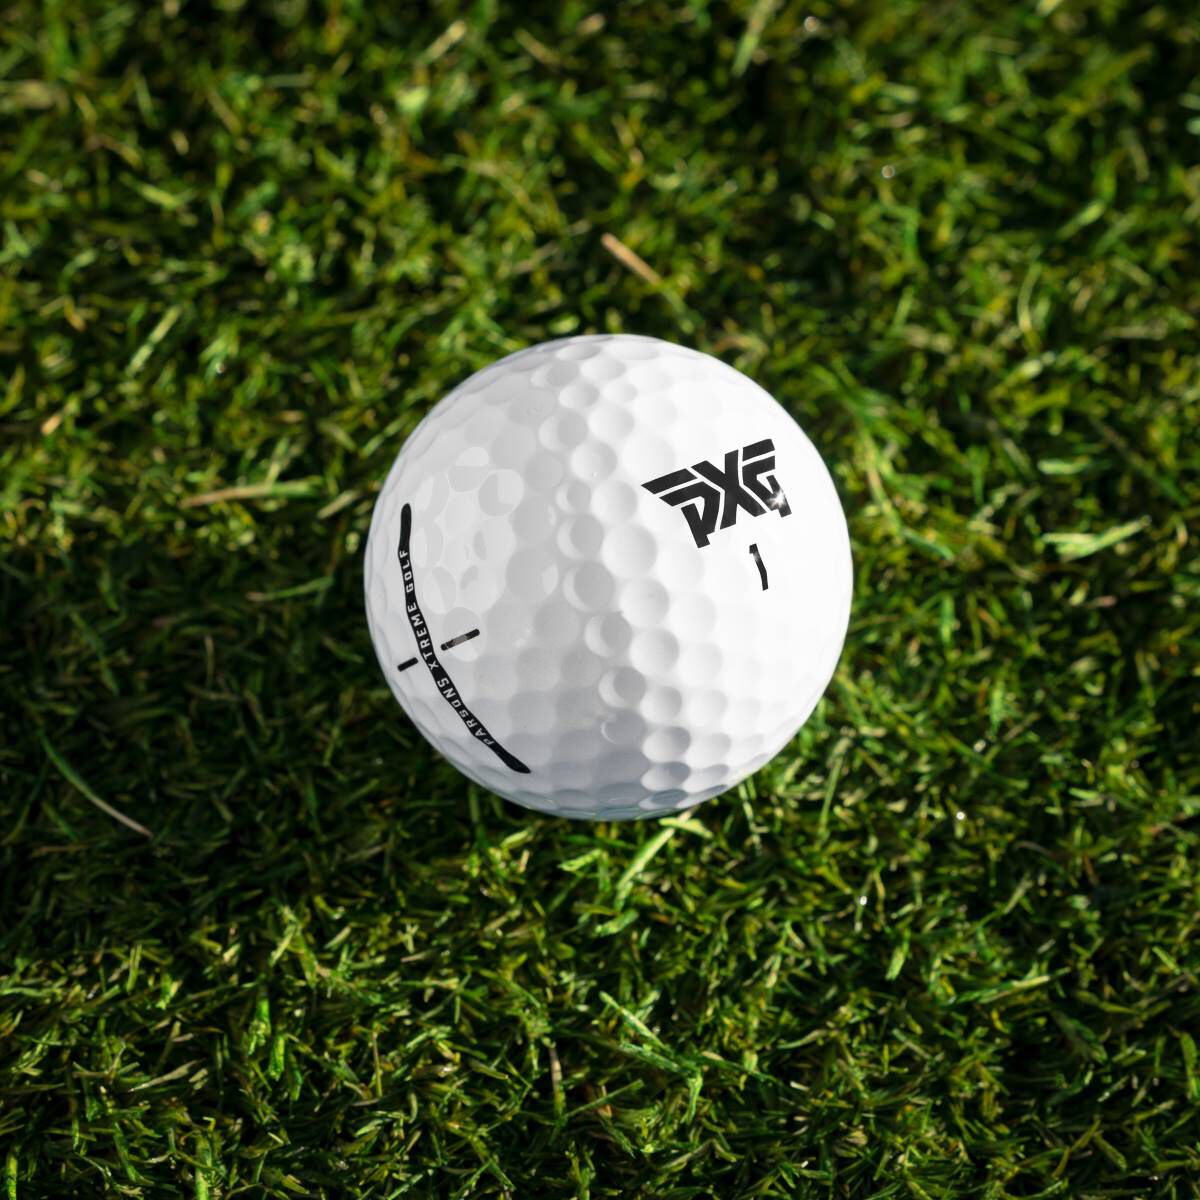 PXG Xtreme Premium Golf Balls - Air Force 